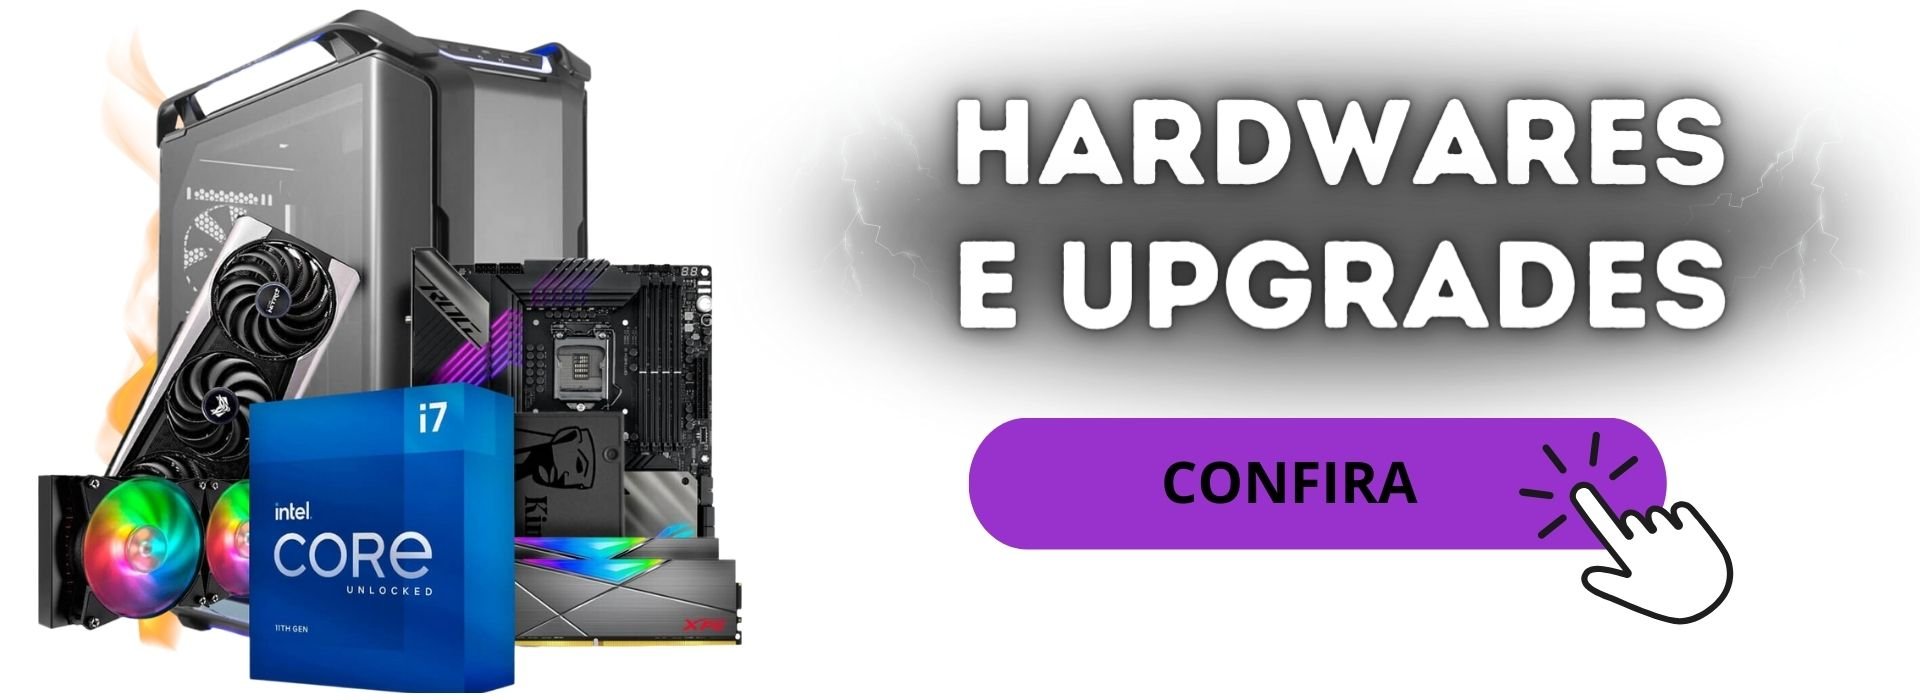 hardwares-e-upgrades-em-sjc-2